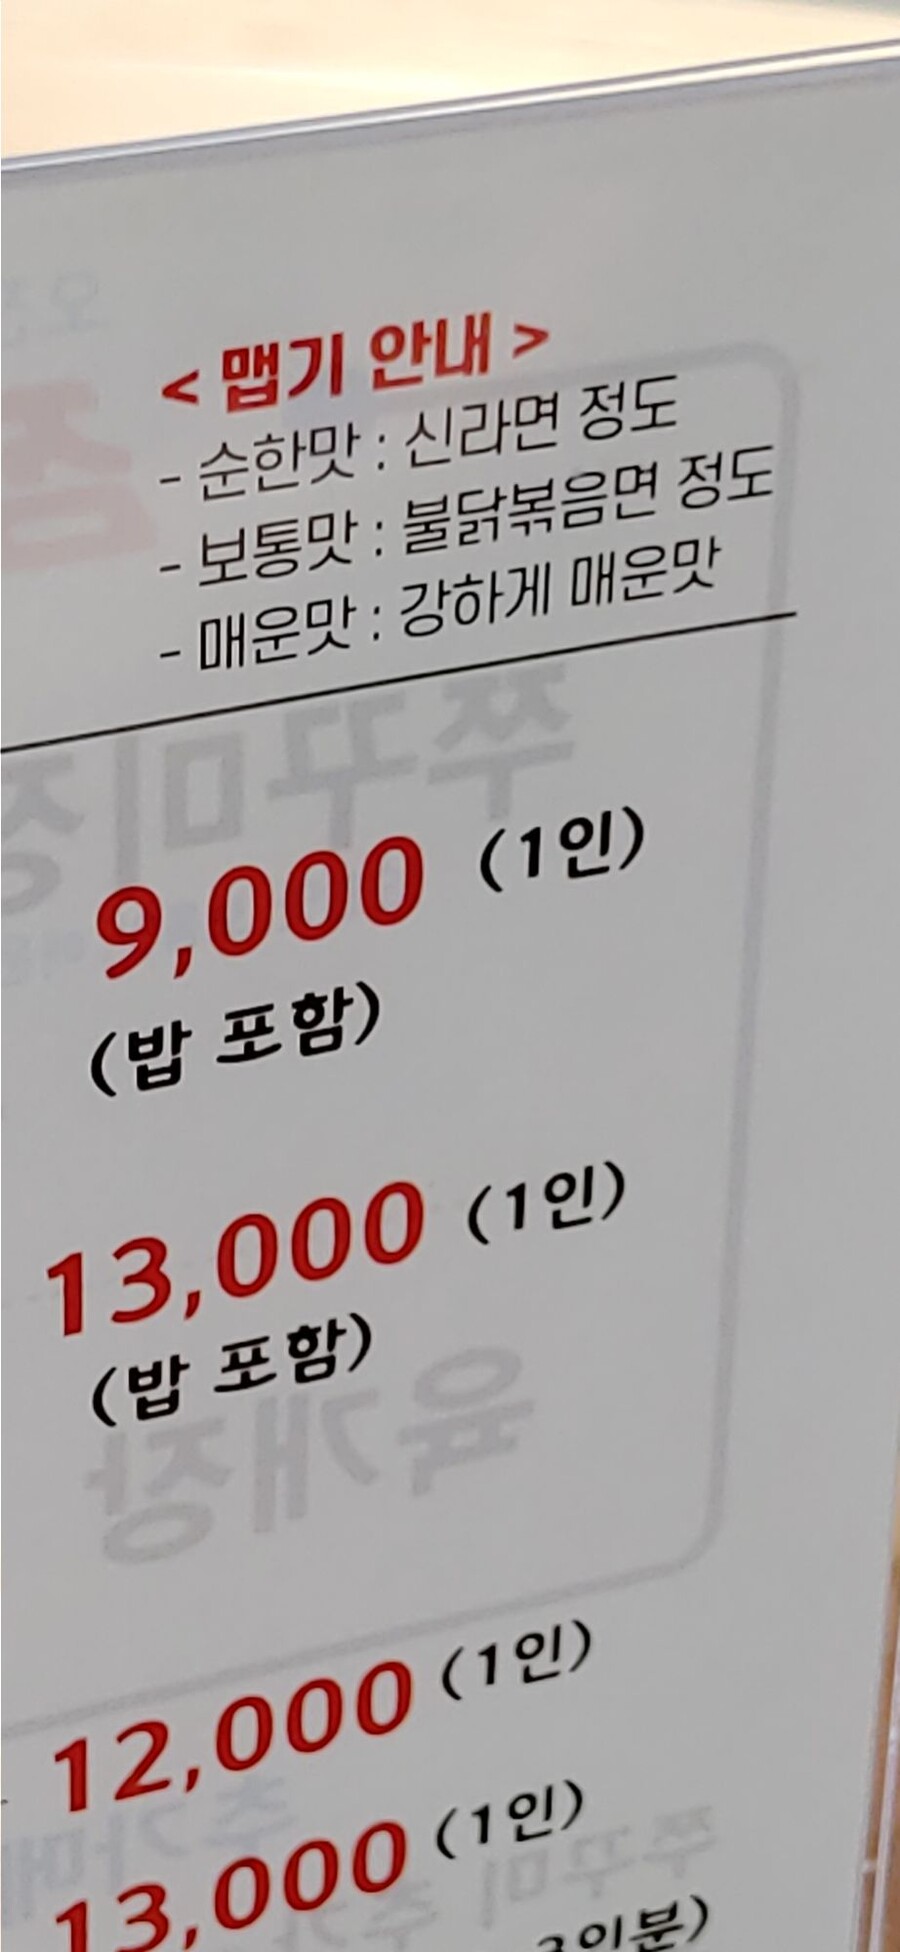 4 파워인플레가 진행된 한국.jpg